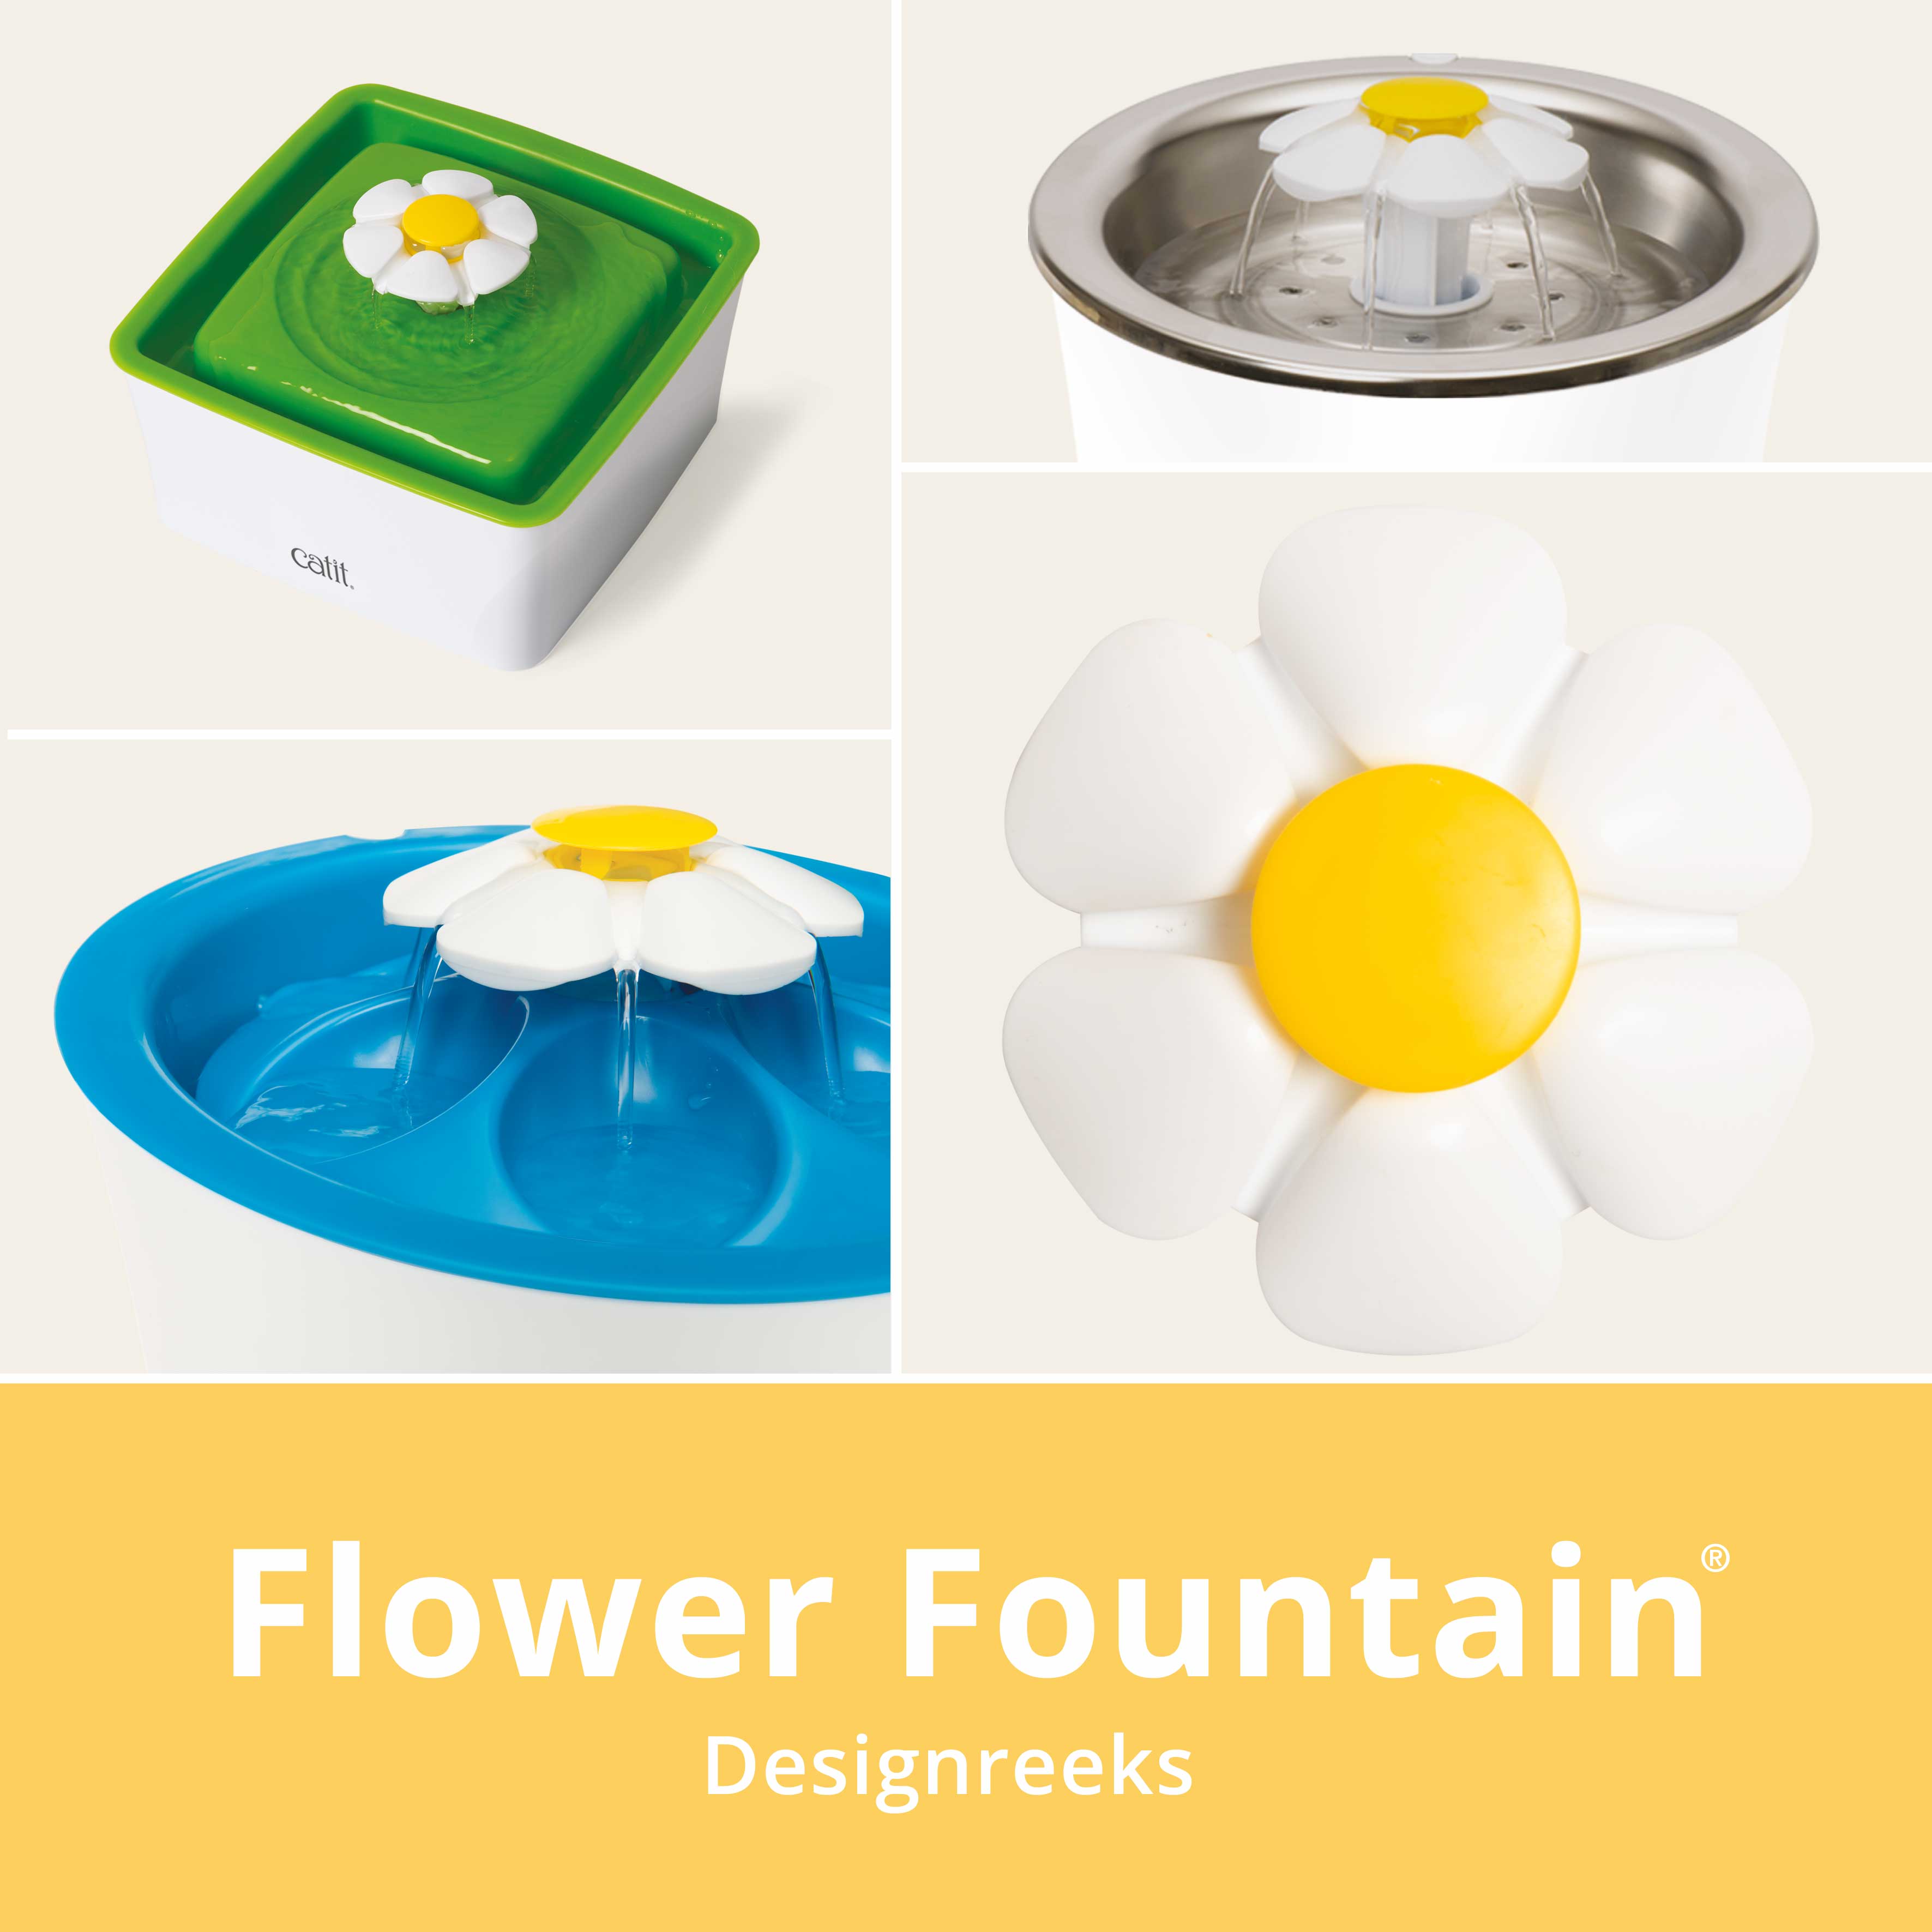 Catit Flower Fountain Designreeks